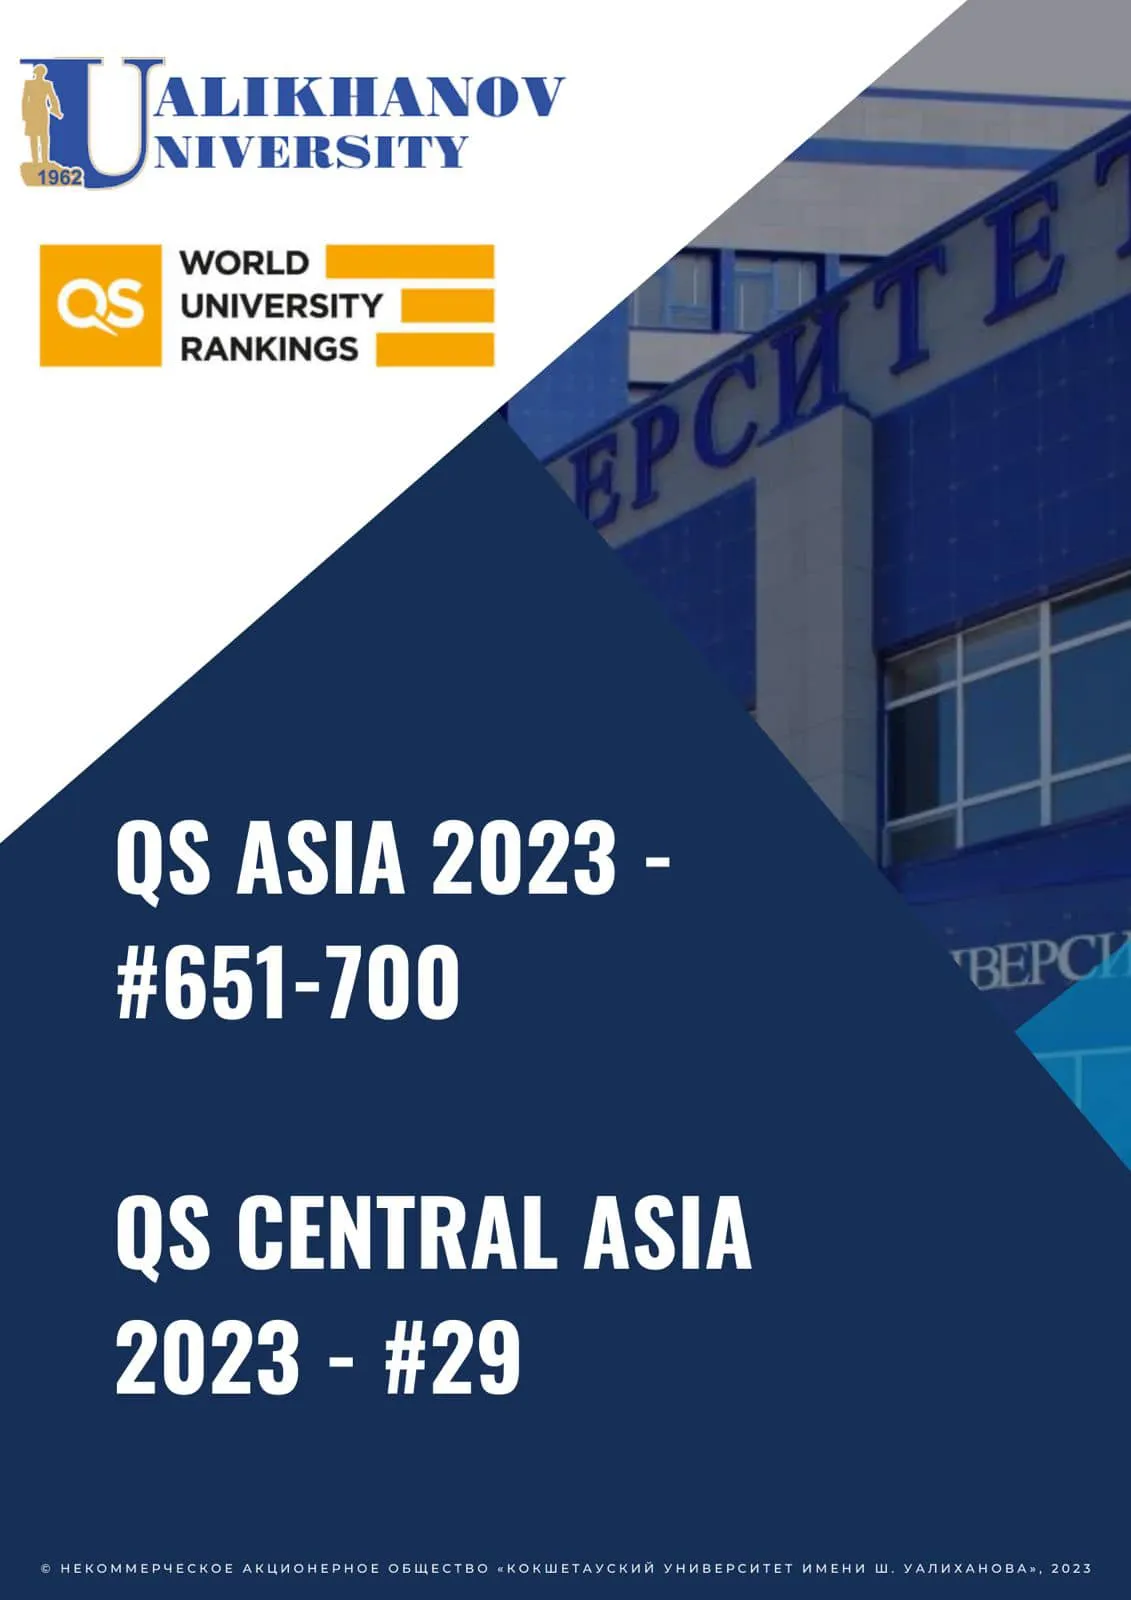 Сегодня все университеты мира получили официальные результаты рейтинга QS Asia 2023, и это уже второй опыт участия Университета имени  Ш. Уалиханова в этом престижном рейтинге